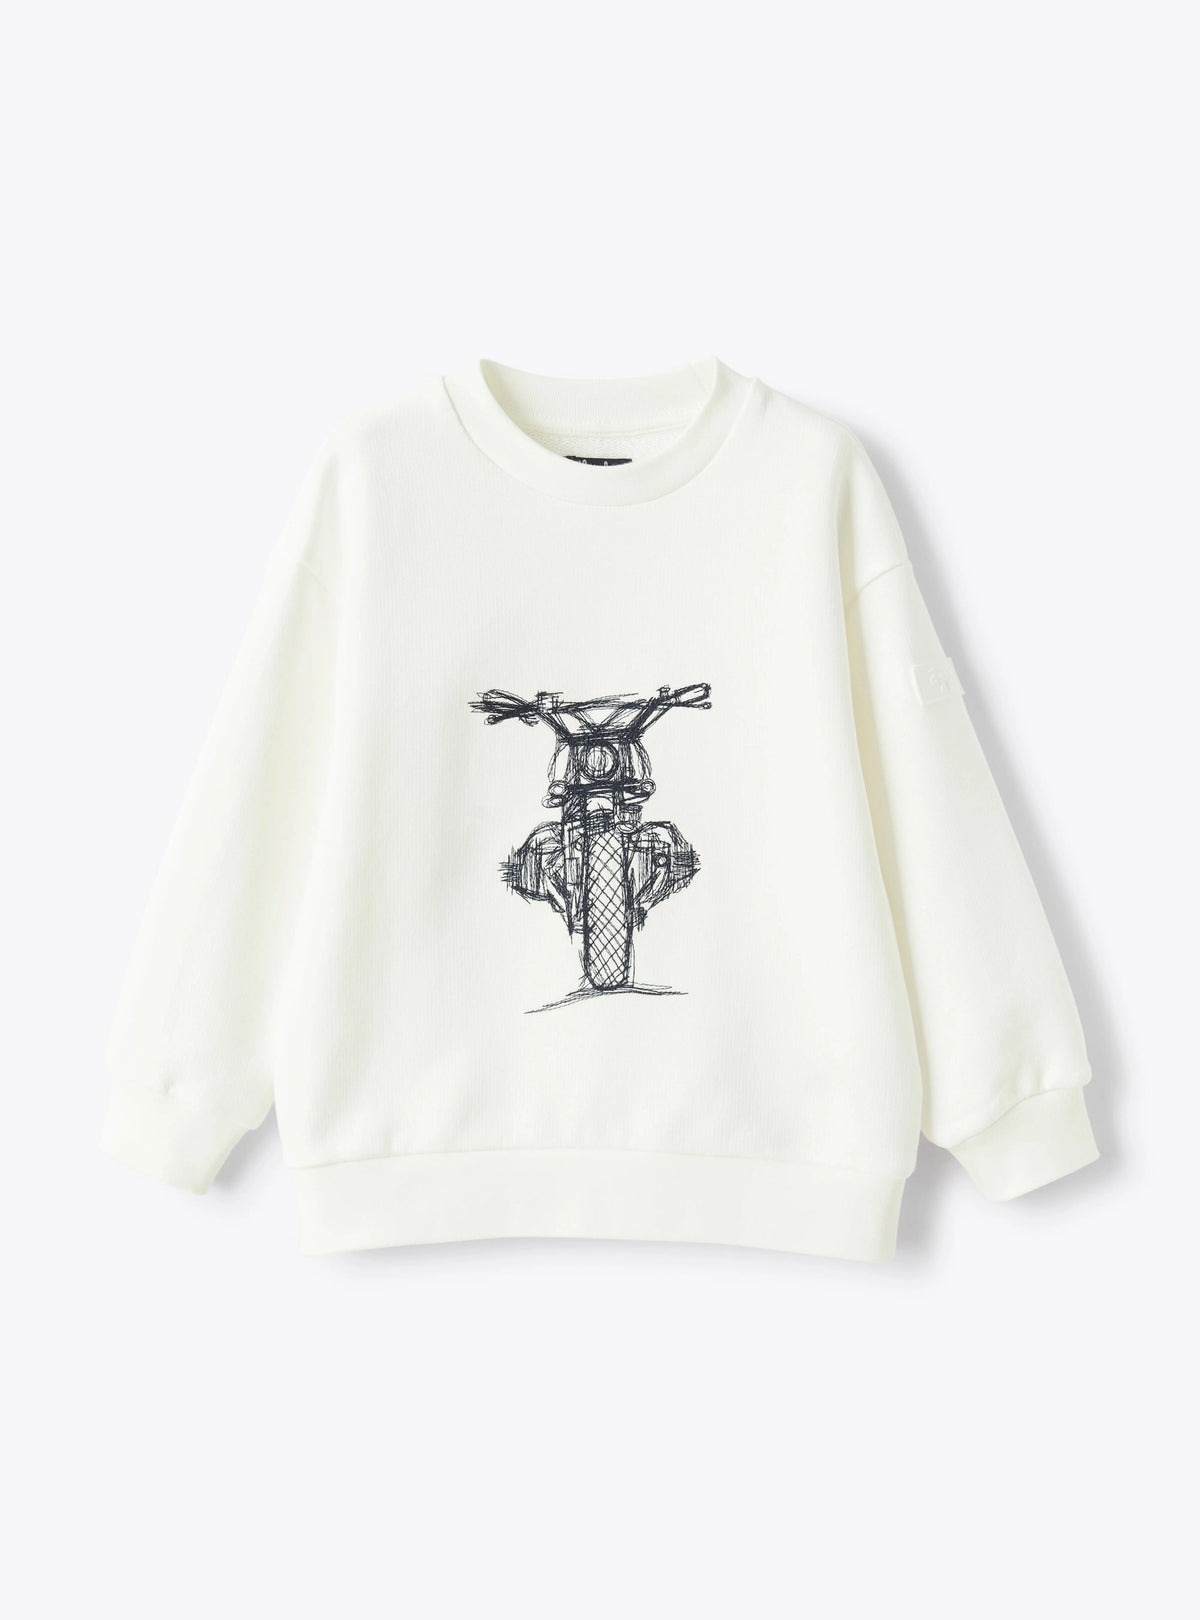 Sweatshirt with Motorcycle Embroidery